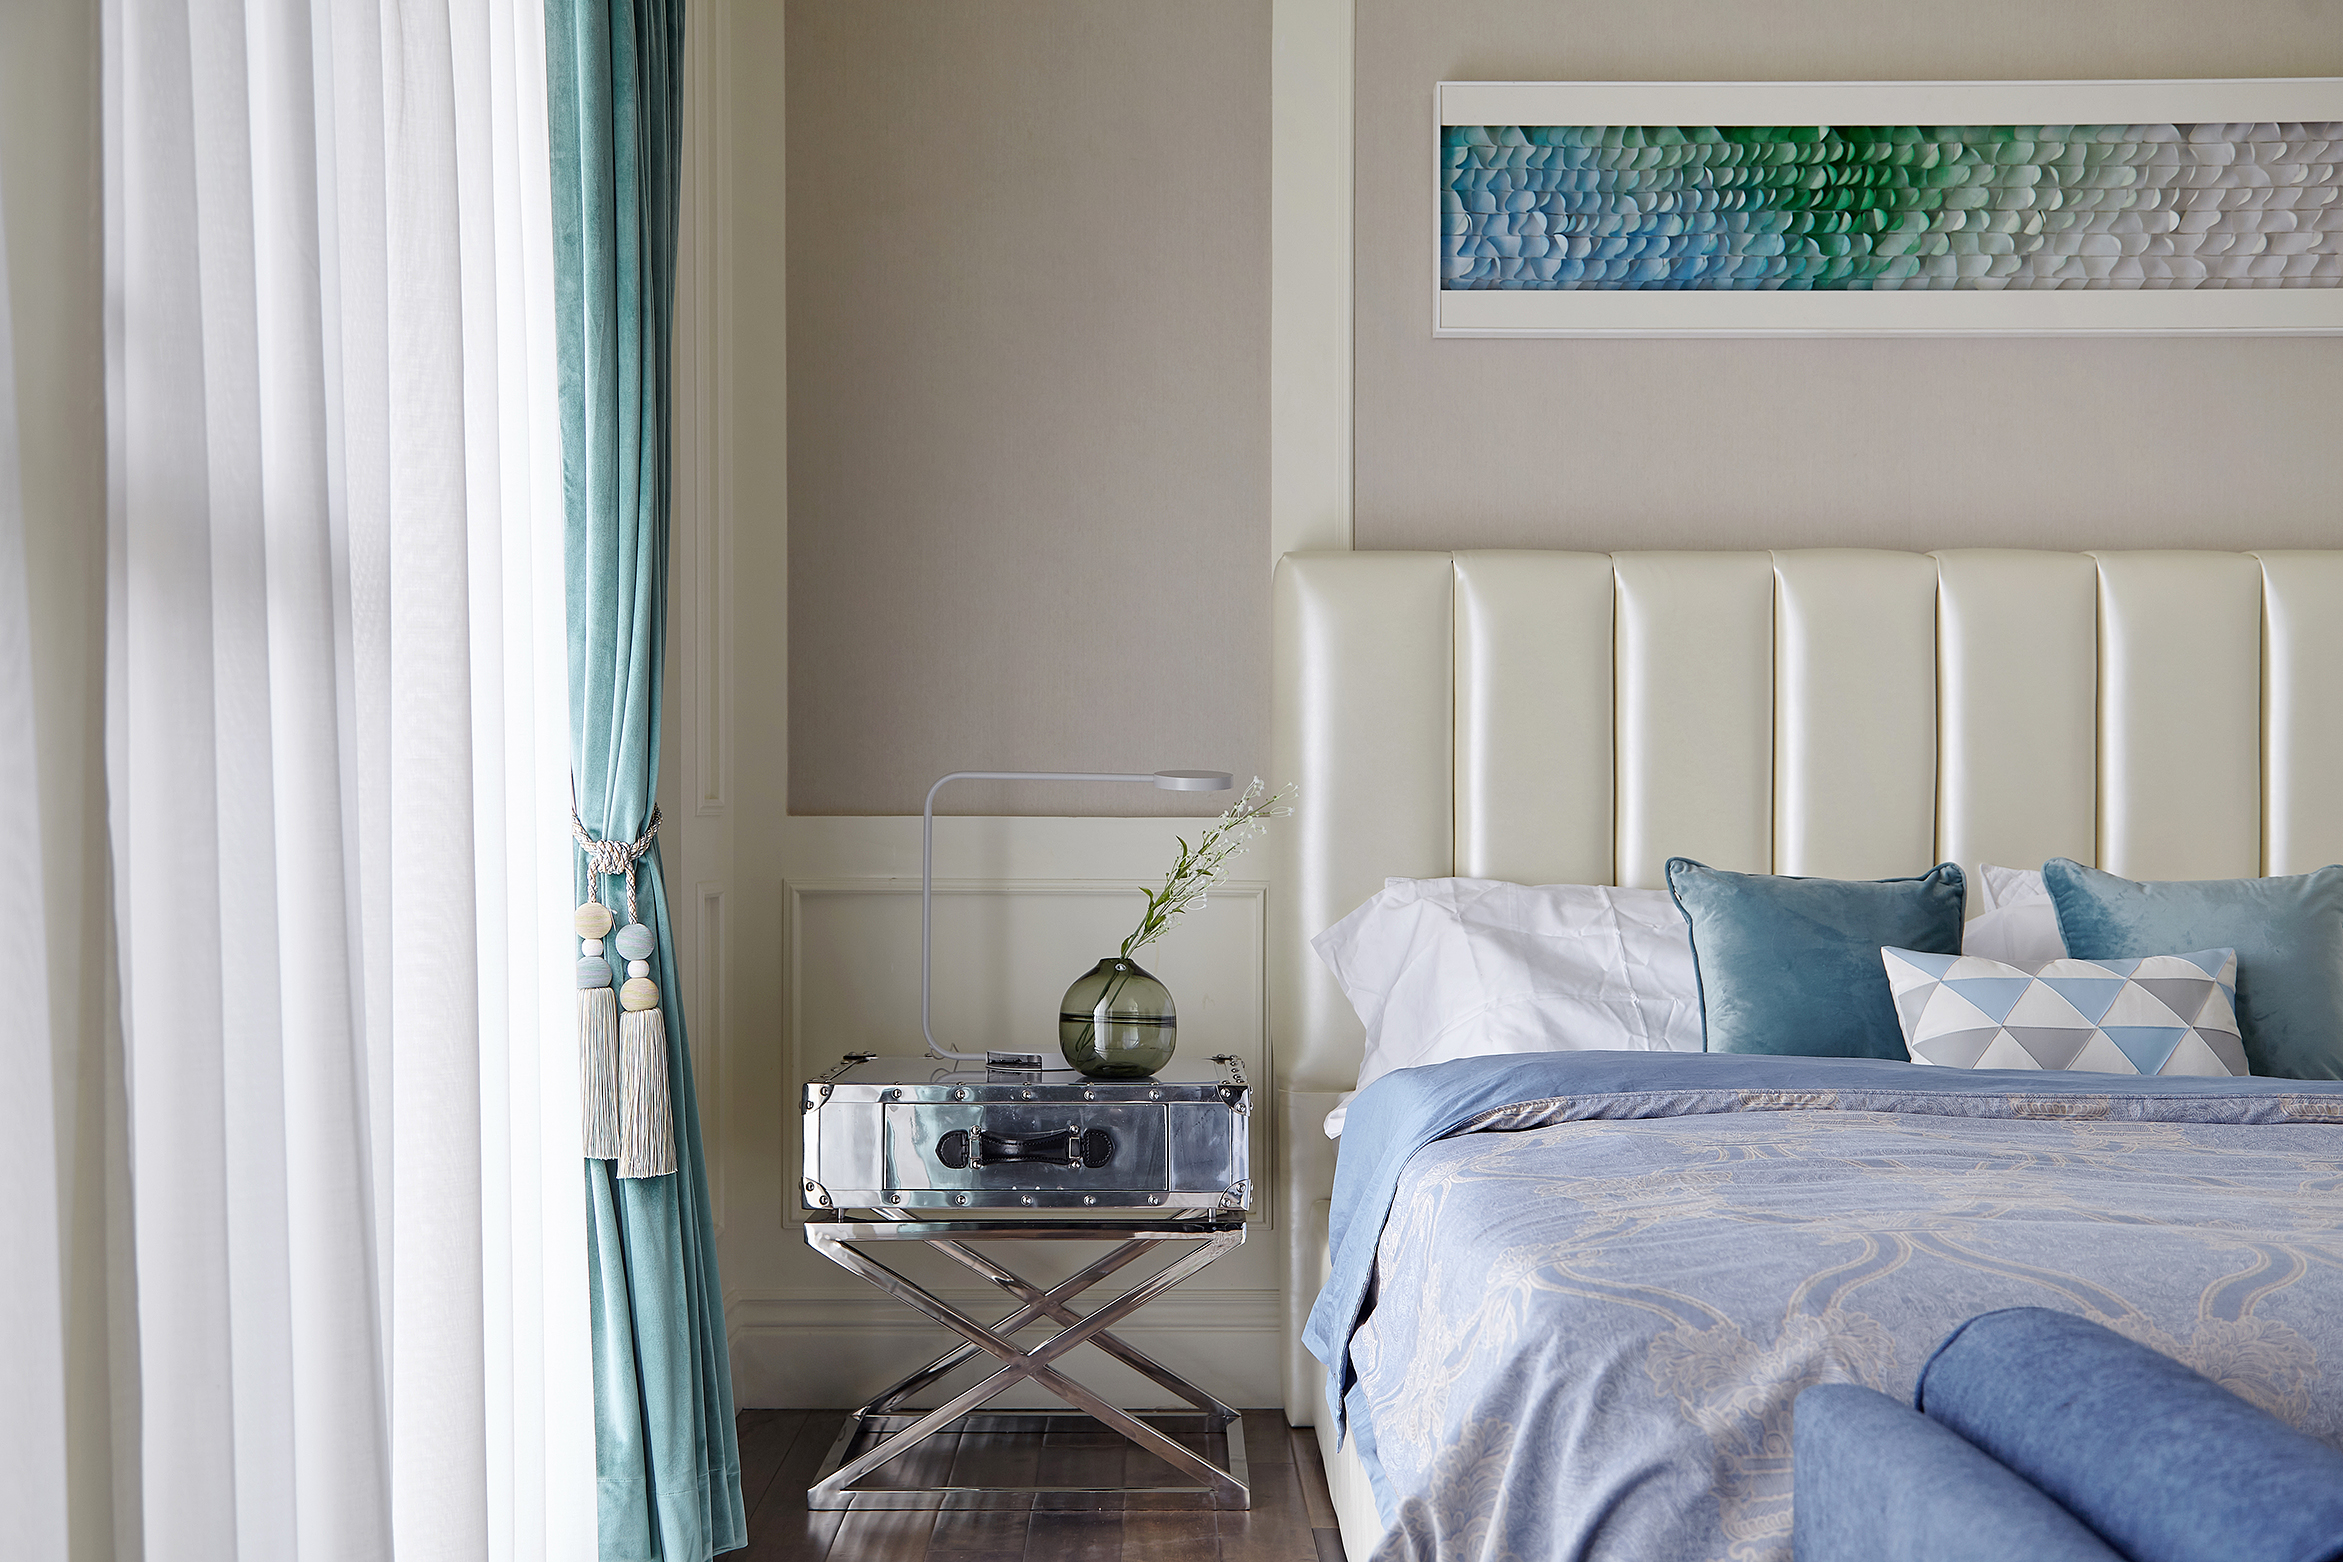 欧式 混搭 别墅 卧室图片来自尚舍设计在收藏者的温馨house的分享